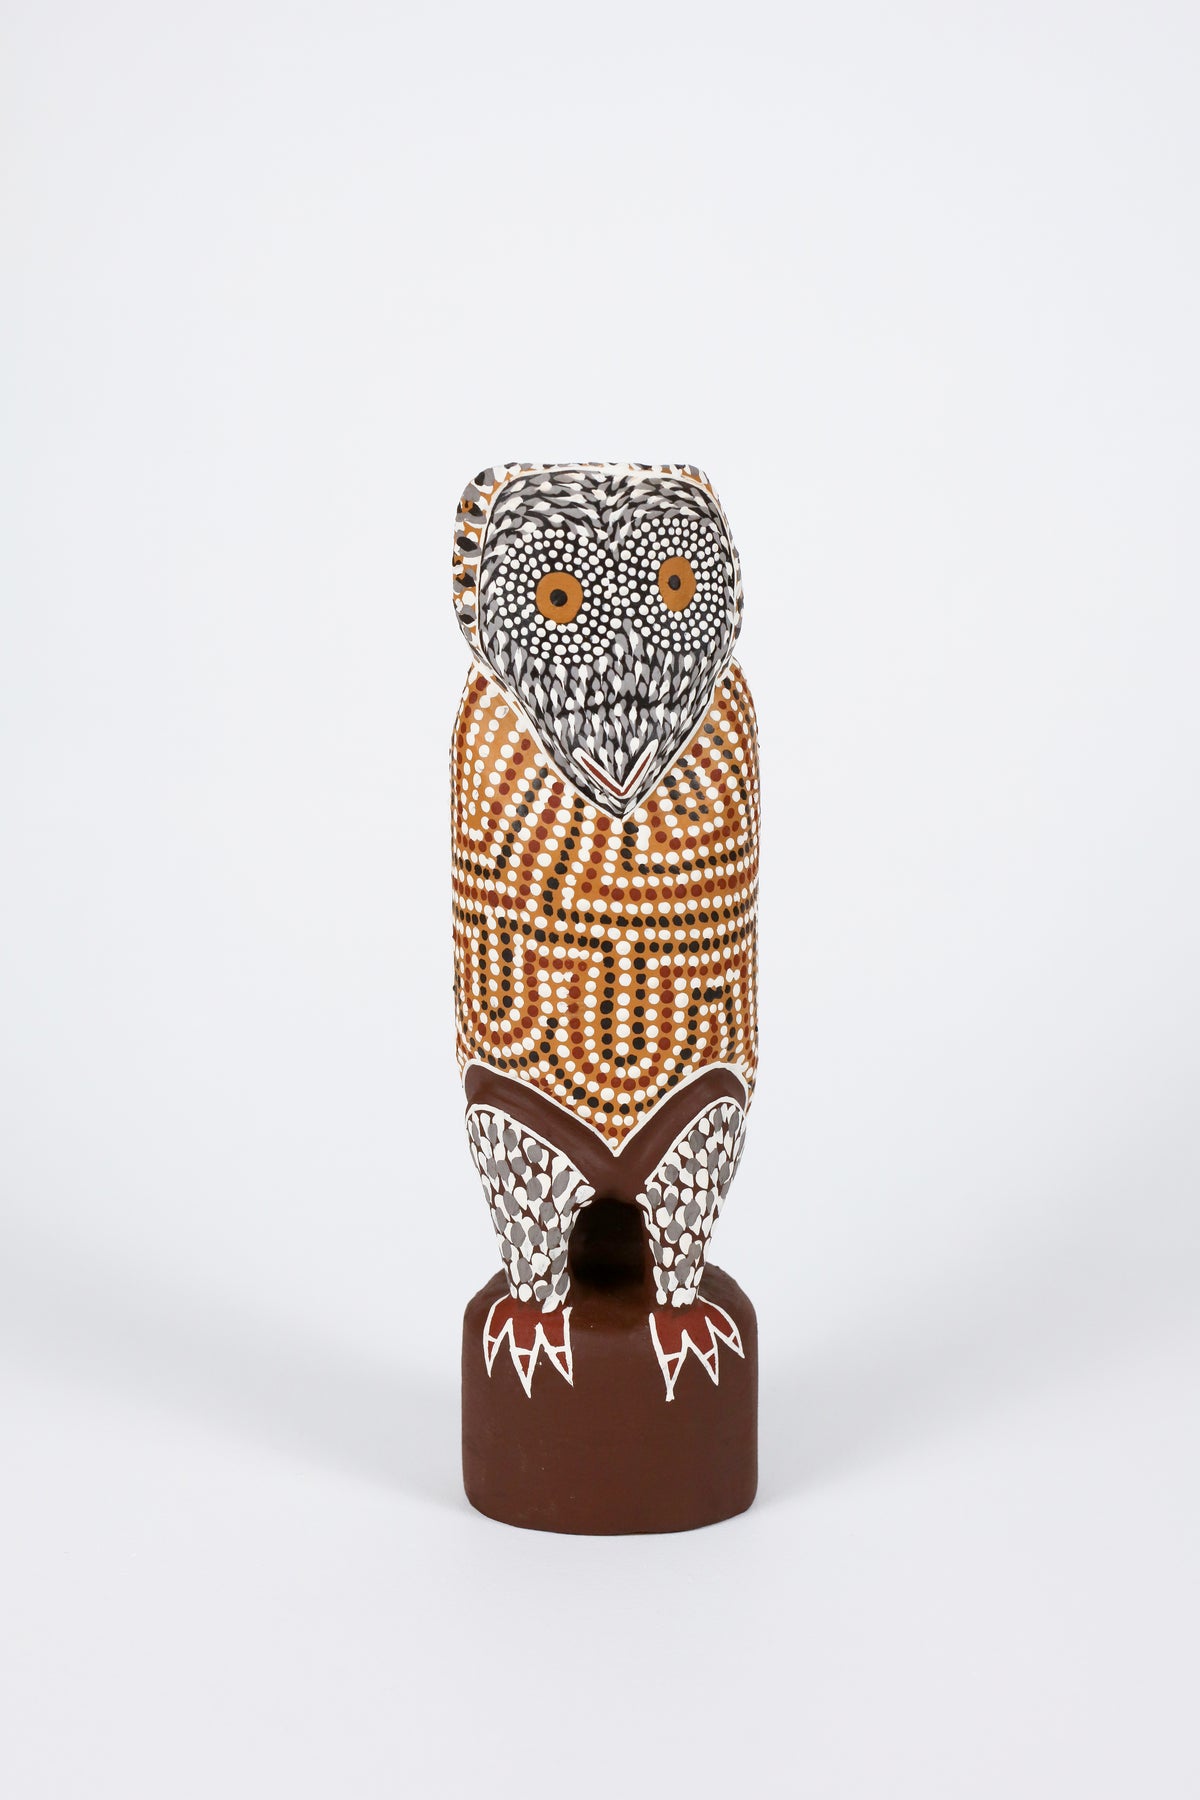 Judy Manany | Worrwurr (Owl) 23-260